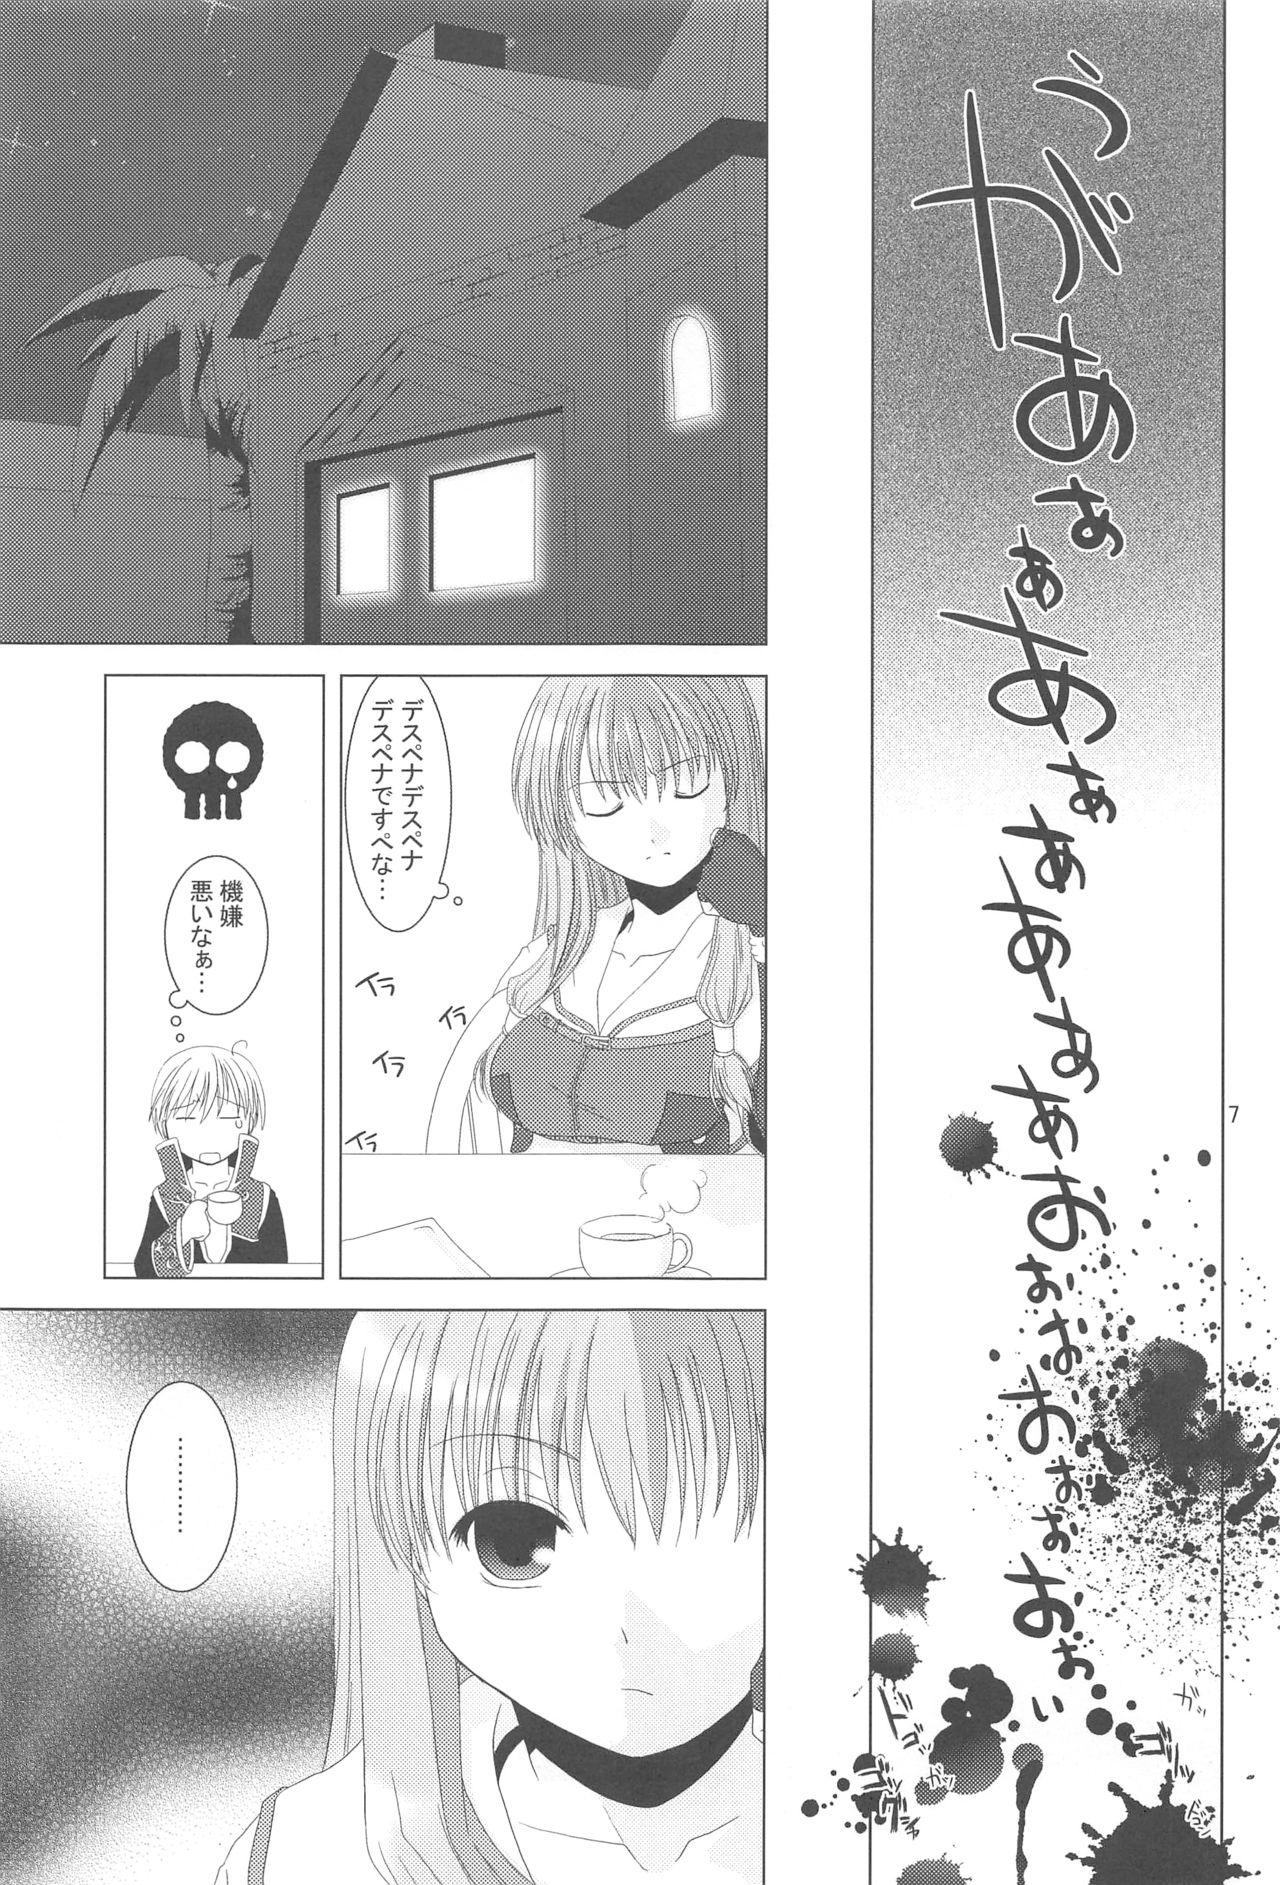 Hymen Quagmire no Chuushin de, Shuuchuuryoku Koujou to Sakebu - Ragnarok online And - Page 6